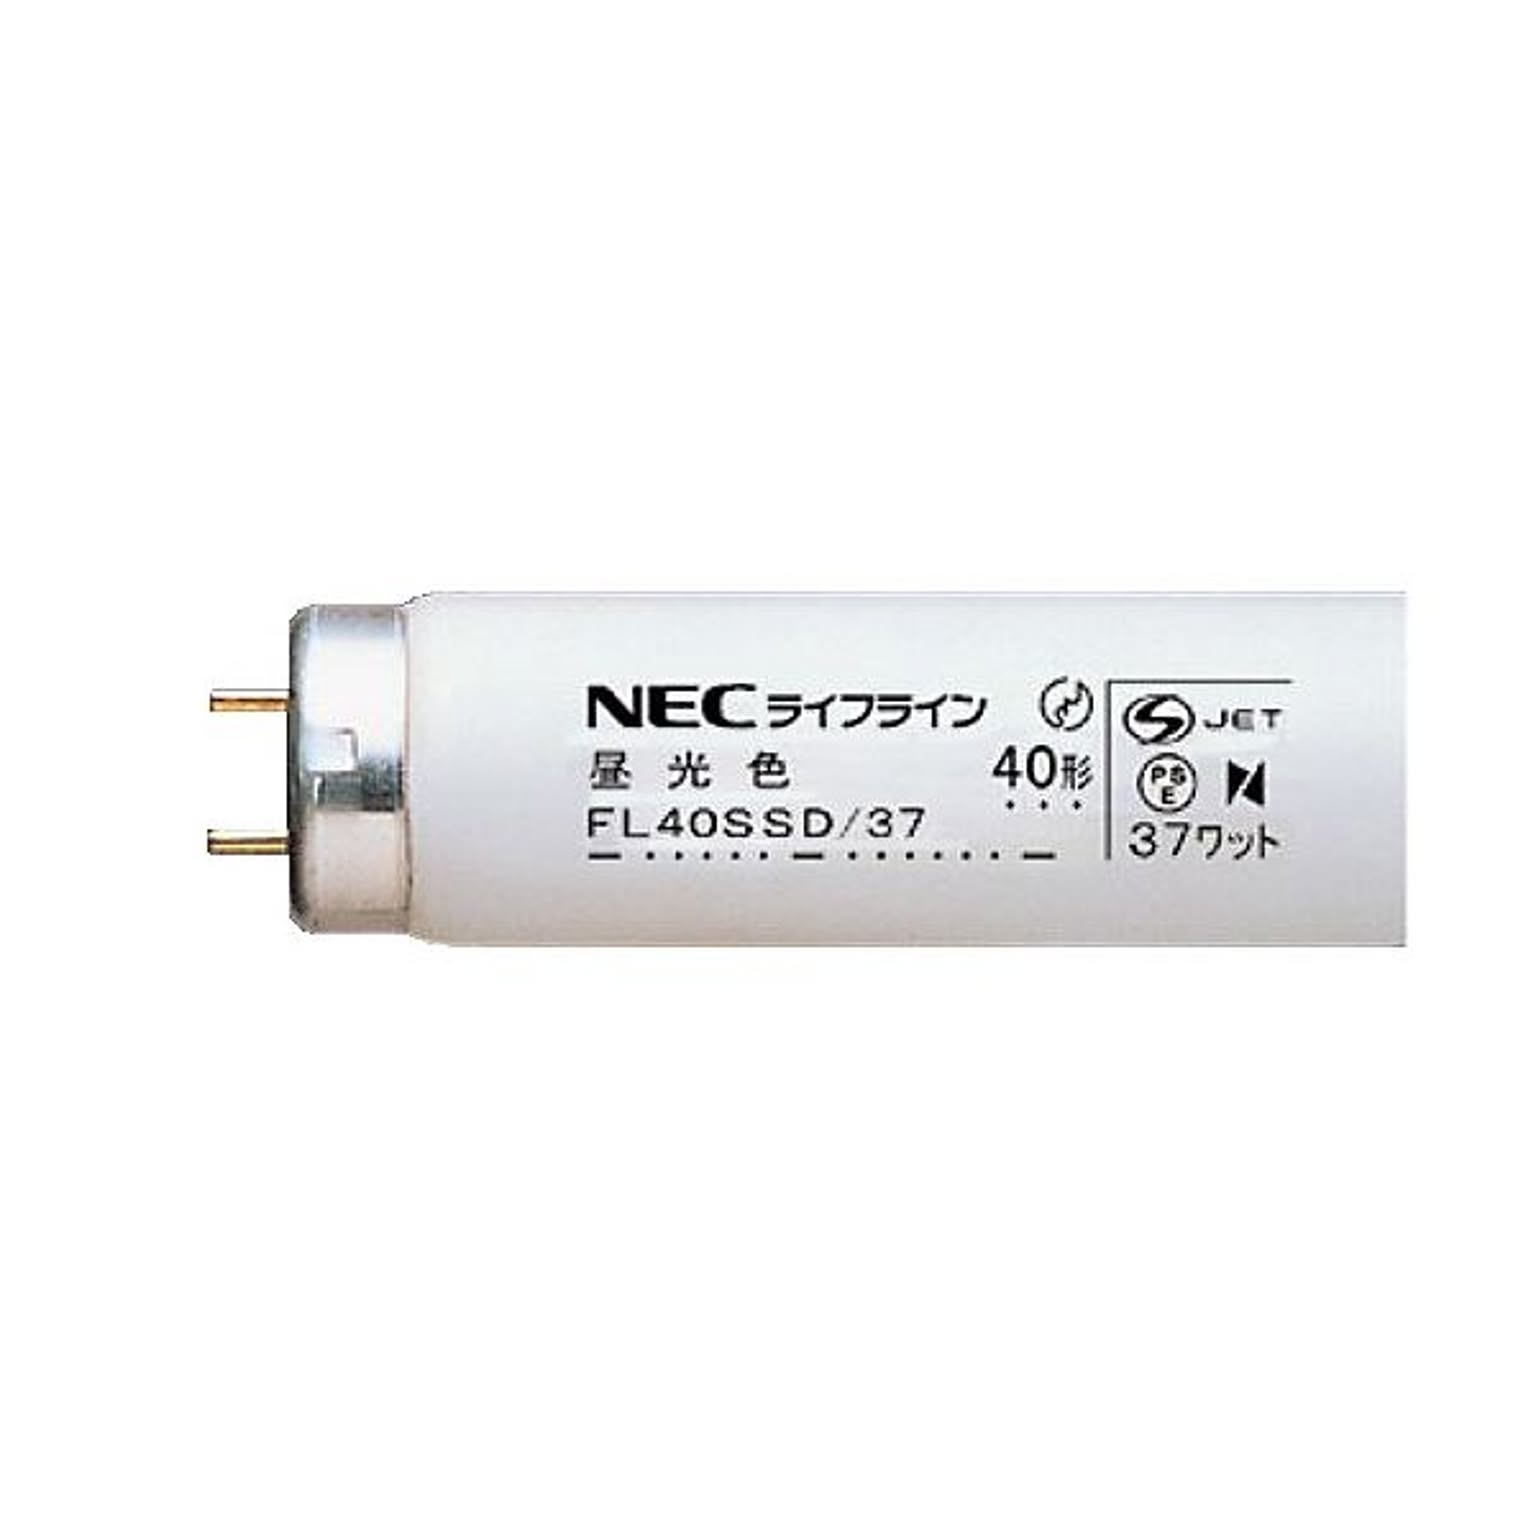 NEC 蛍光ランプ ライフラインII直管グロースタータ形 40W形 昼光色 業務用パック FL40SSD/371セット(100本:25本×4パック)